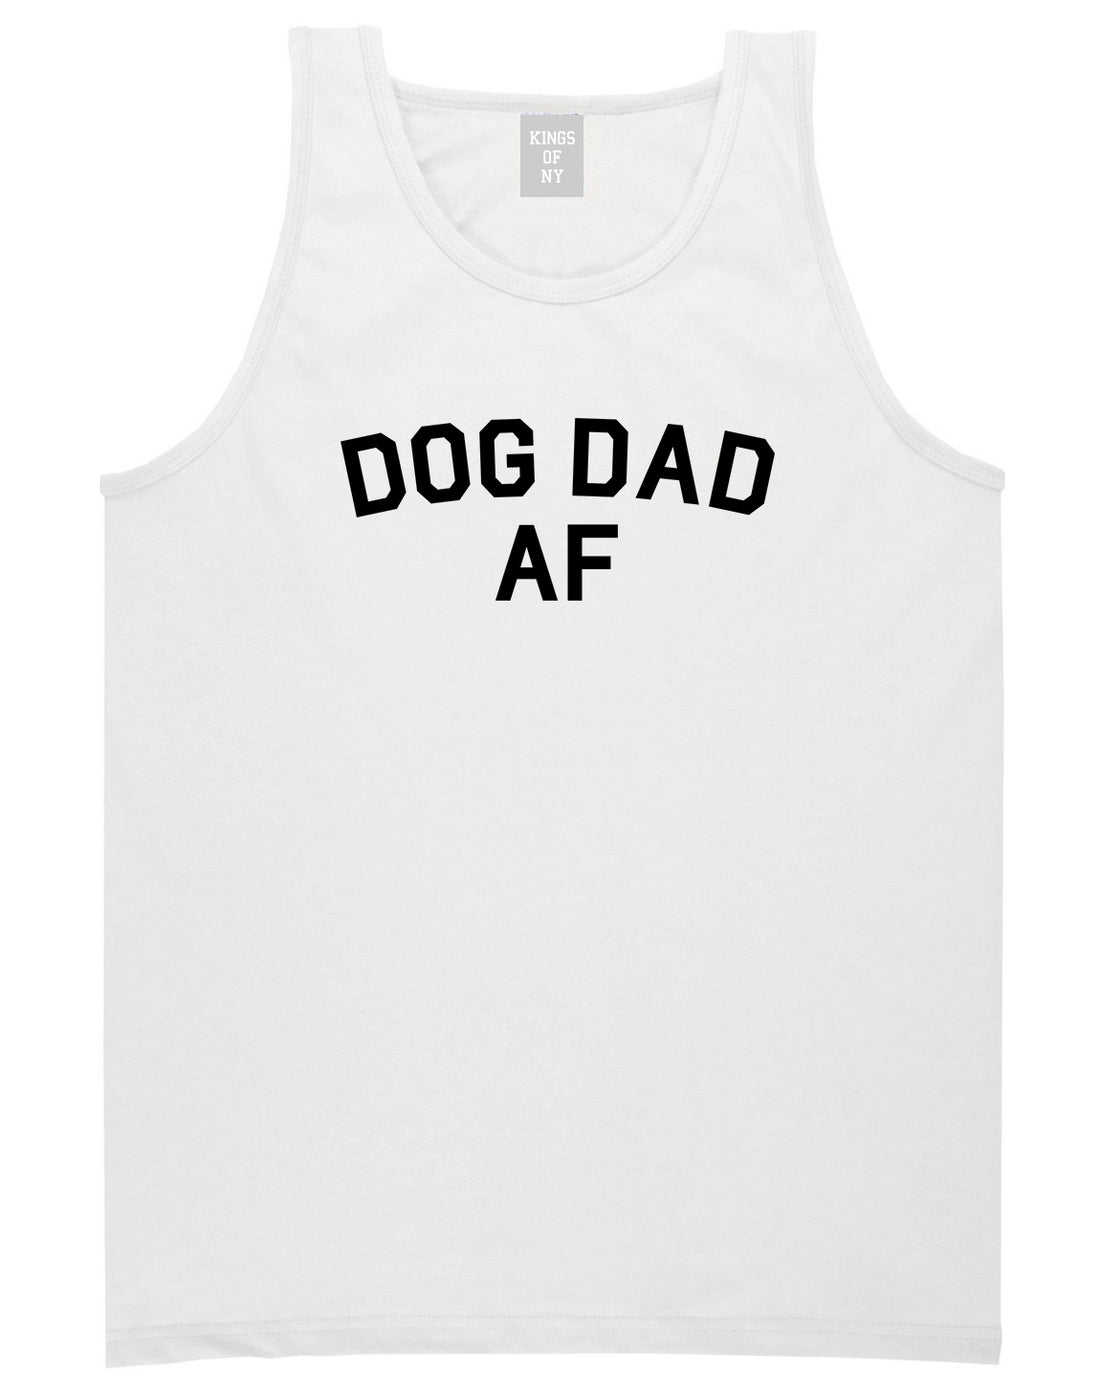 Dog Dad Af Daddy Mens Tank Top Shirt White